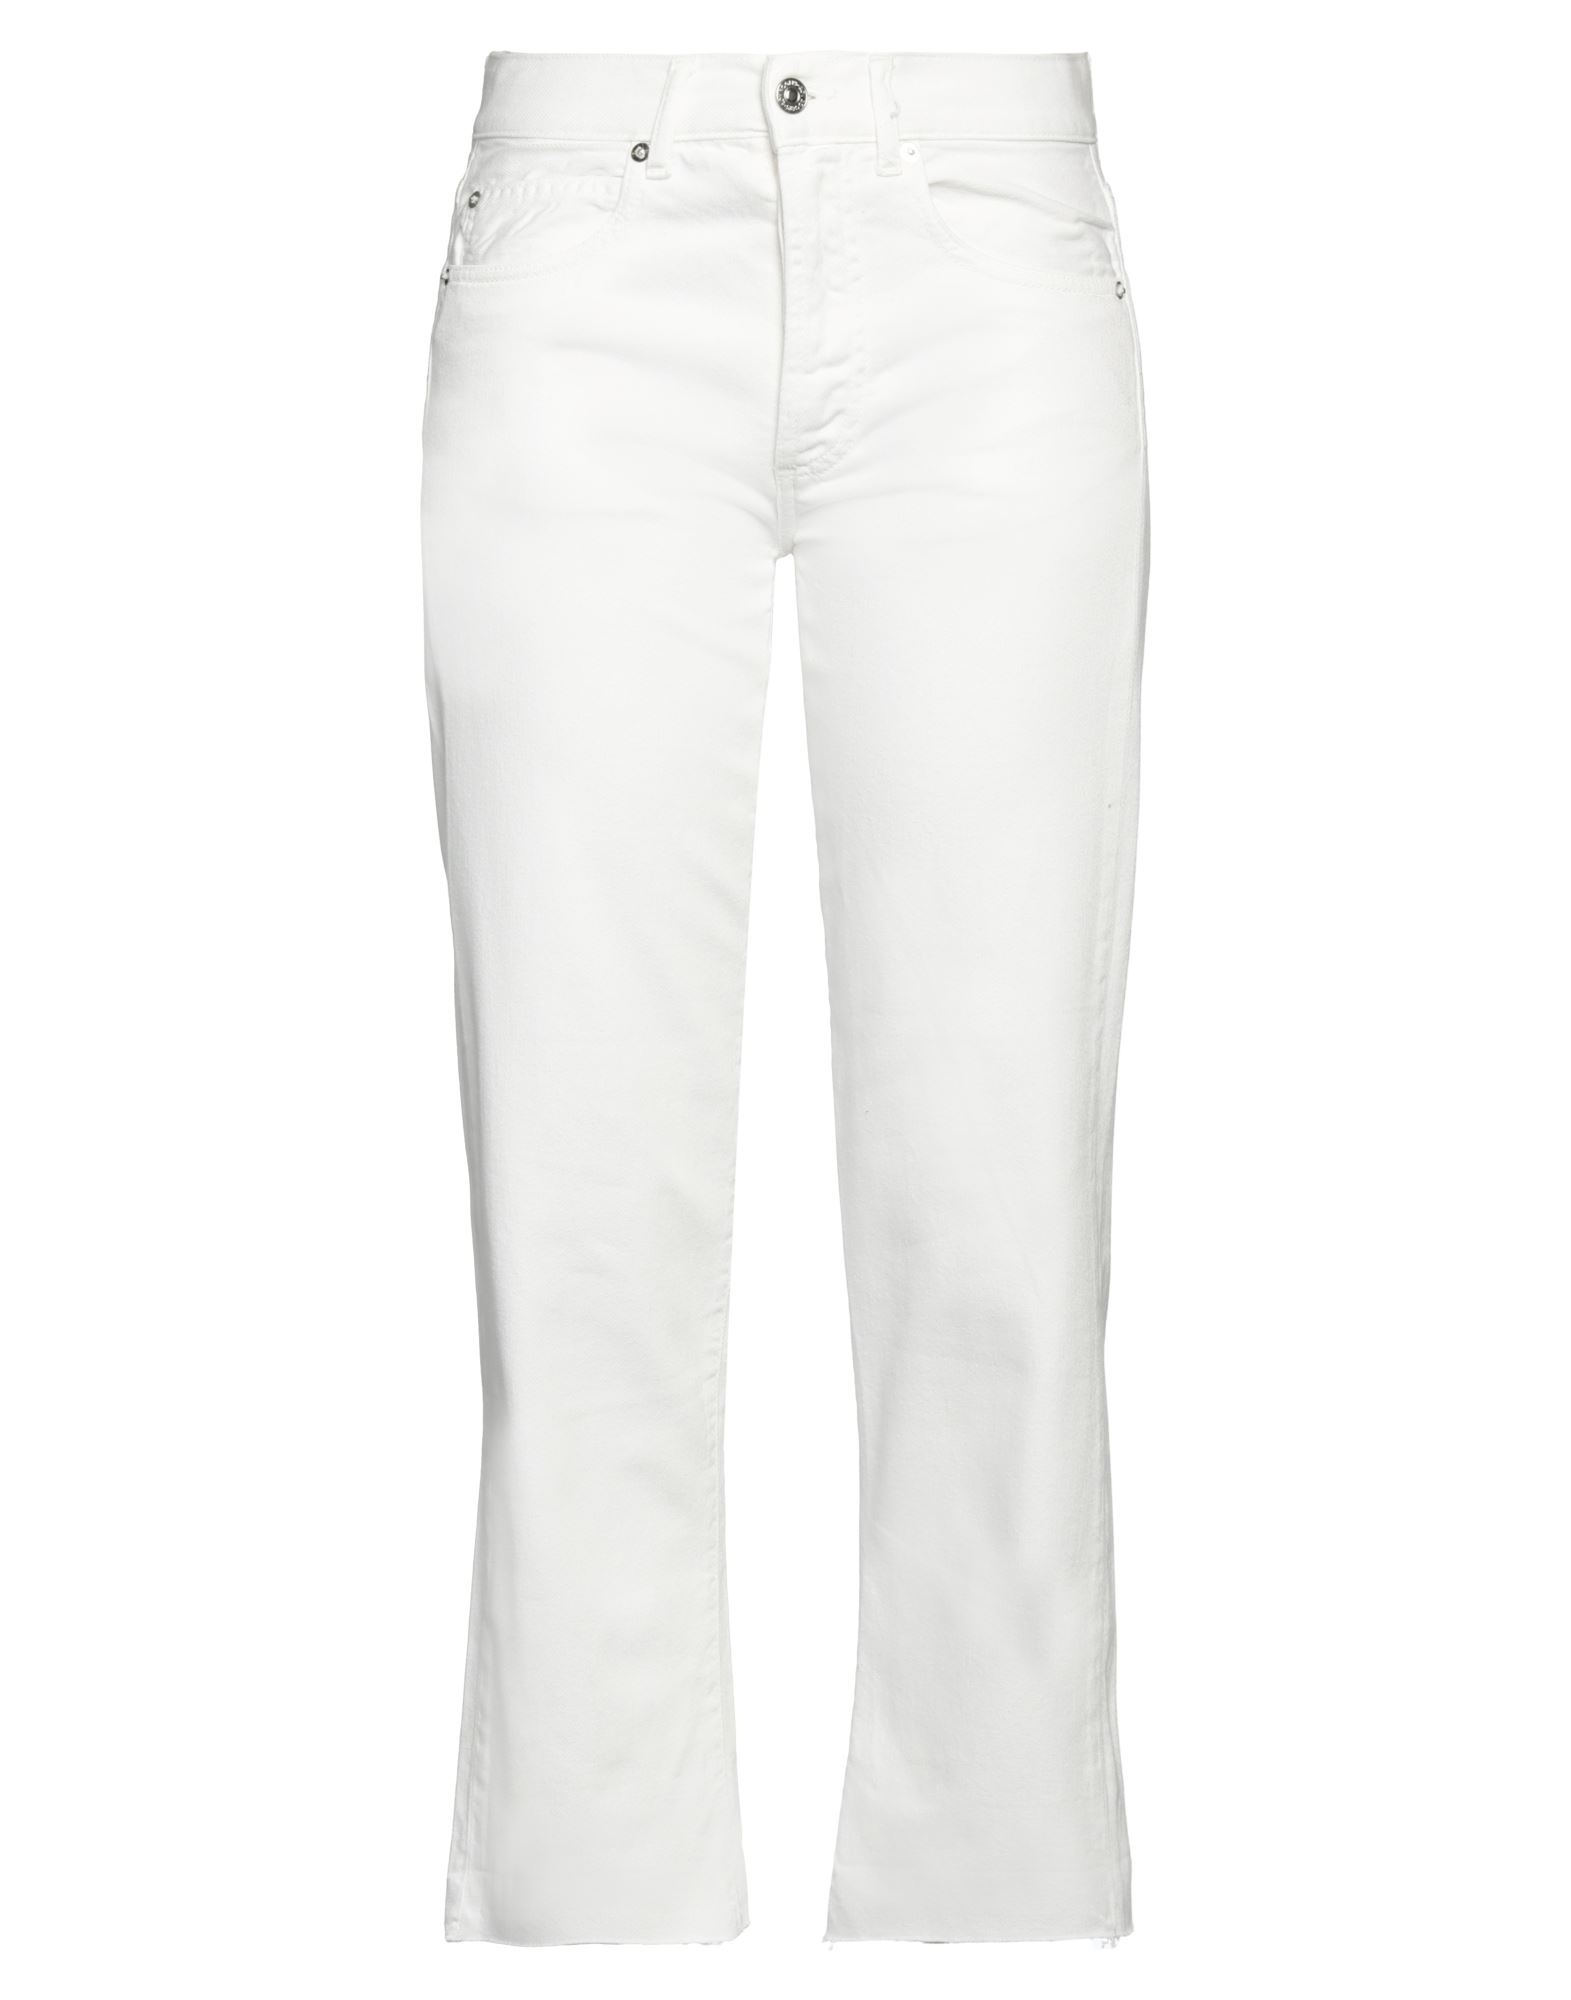 ROŸ ROGER'S Jeanshose Damen Weiß von ROŸ ROGER'S